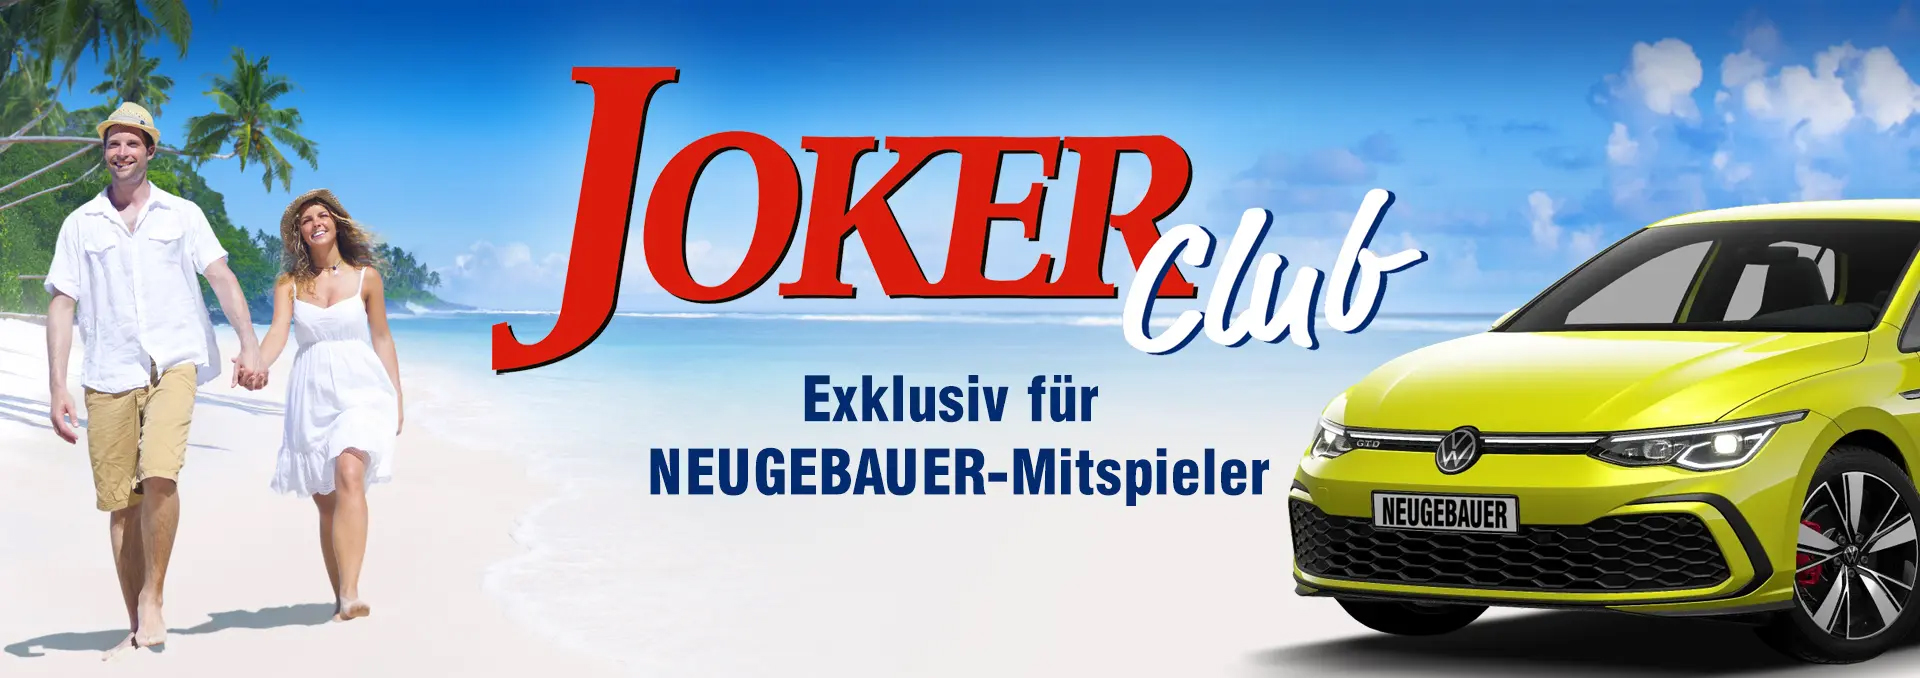 Neugebauer Joker Club